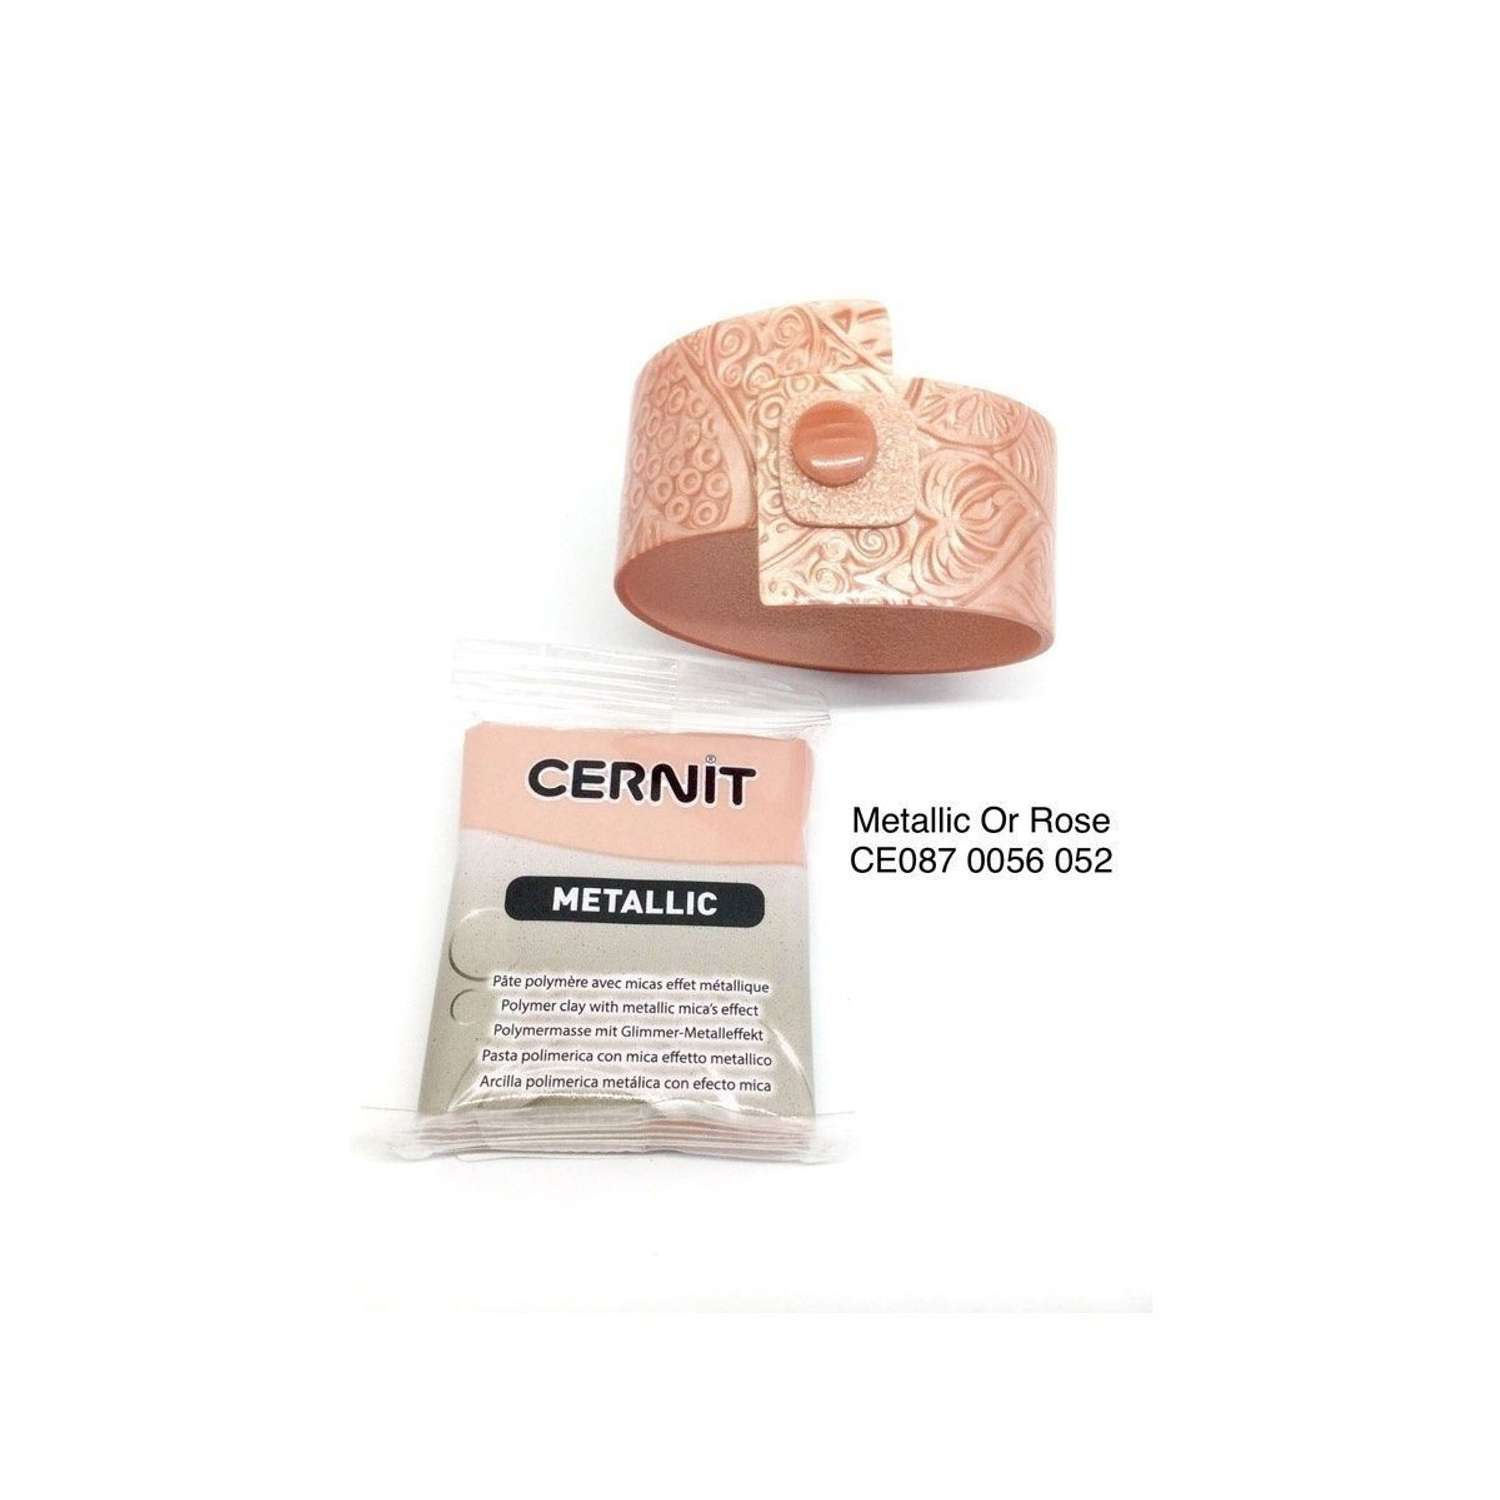 Полимерная глина Cernit пластика запекаемая Цернит metallic 56 гр CE0870059 - фото 10